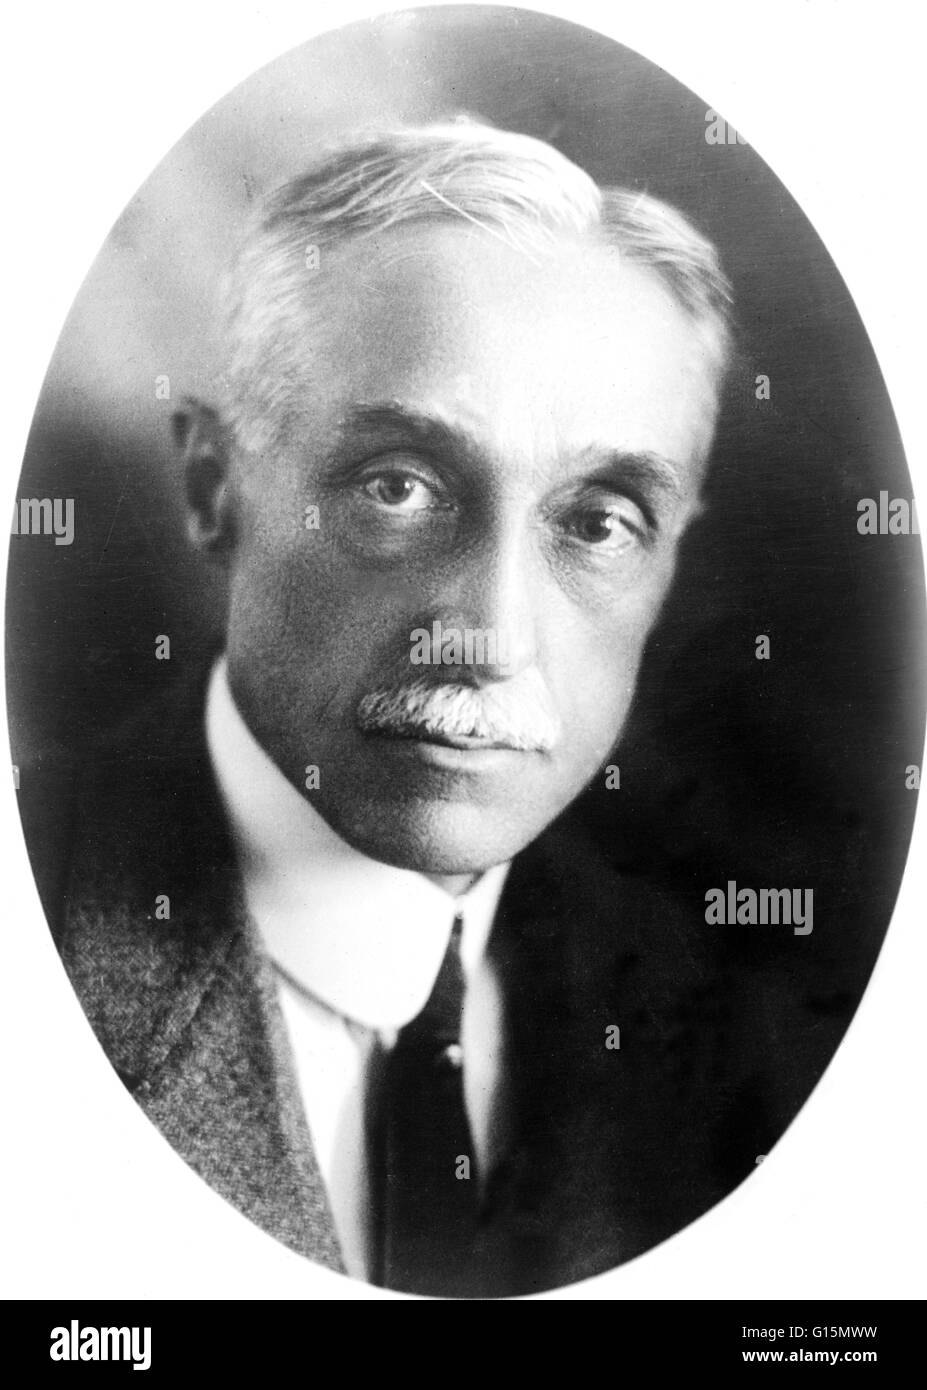 Elmer Ambrose Sperry (Octobre 12, 1860 - Juin 16, 1930) était un inventeur et entrepreneur américain, plus connu en tant que co-inventeur, avec Herman Anschütz-Kaempfe du gyrocompas, un compas magnétique qui est basée sur un disque tournant à vitesse de rotation et de t Banque D'Images